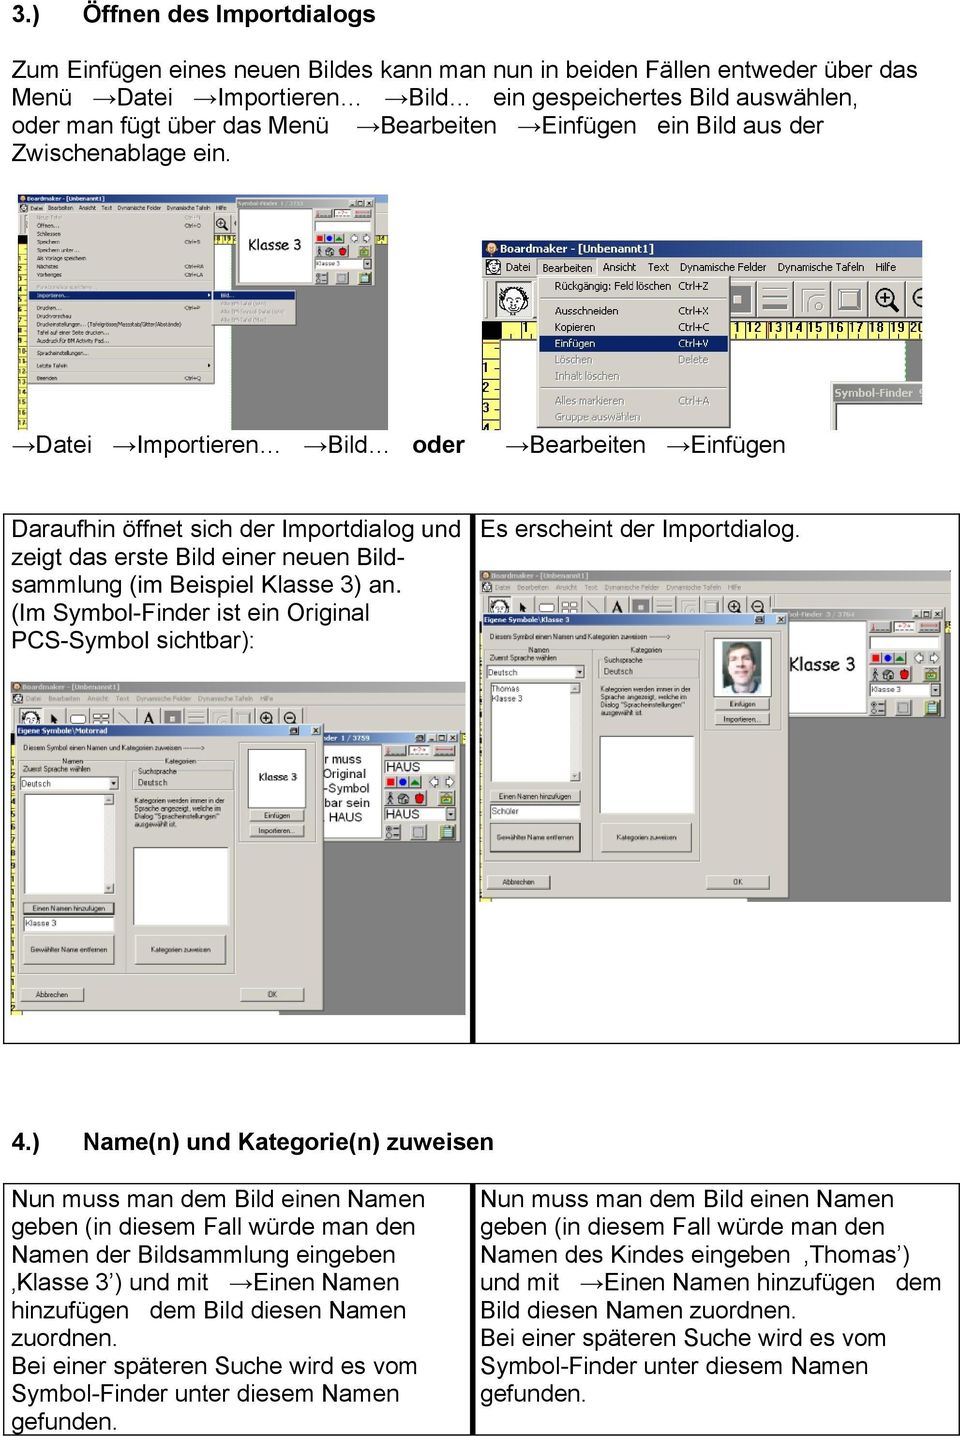 Datei Importieren Bild oder Bearbeiten Einfügen Daraufhin öffnet sich der Importdialog und zeigt das erste Bild einer neuen Bildsammlung (im Beispiel Klasse 3) an.